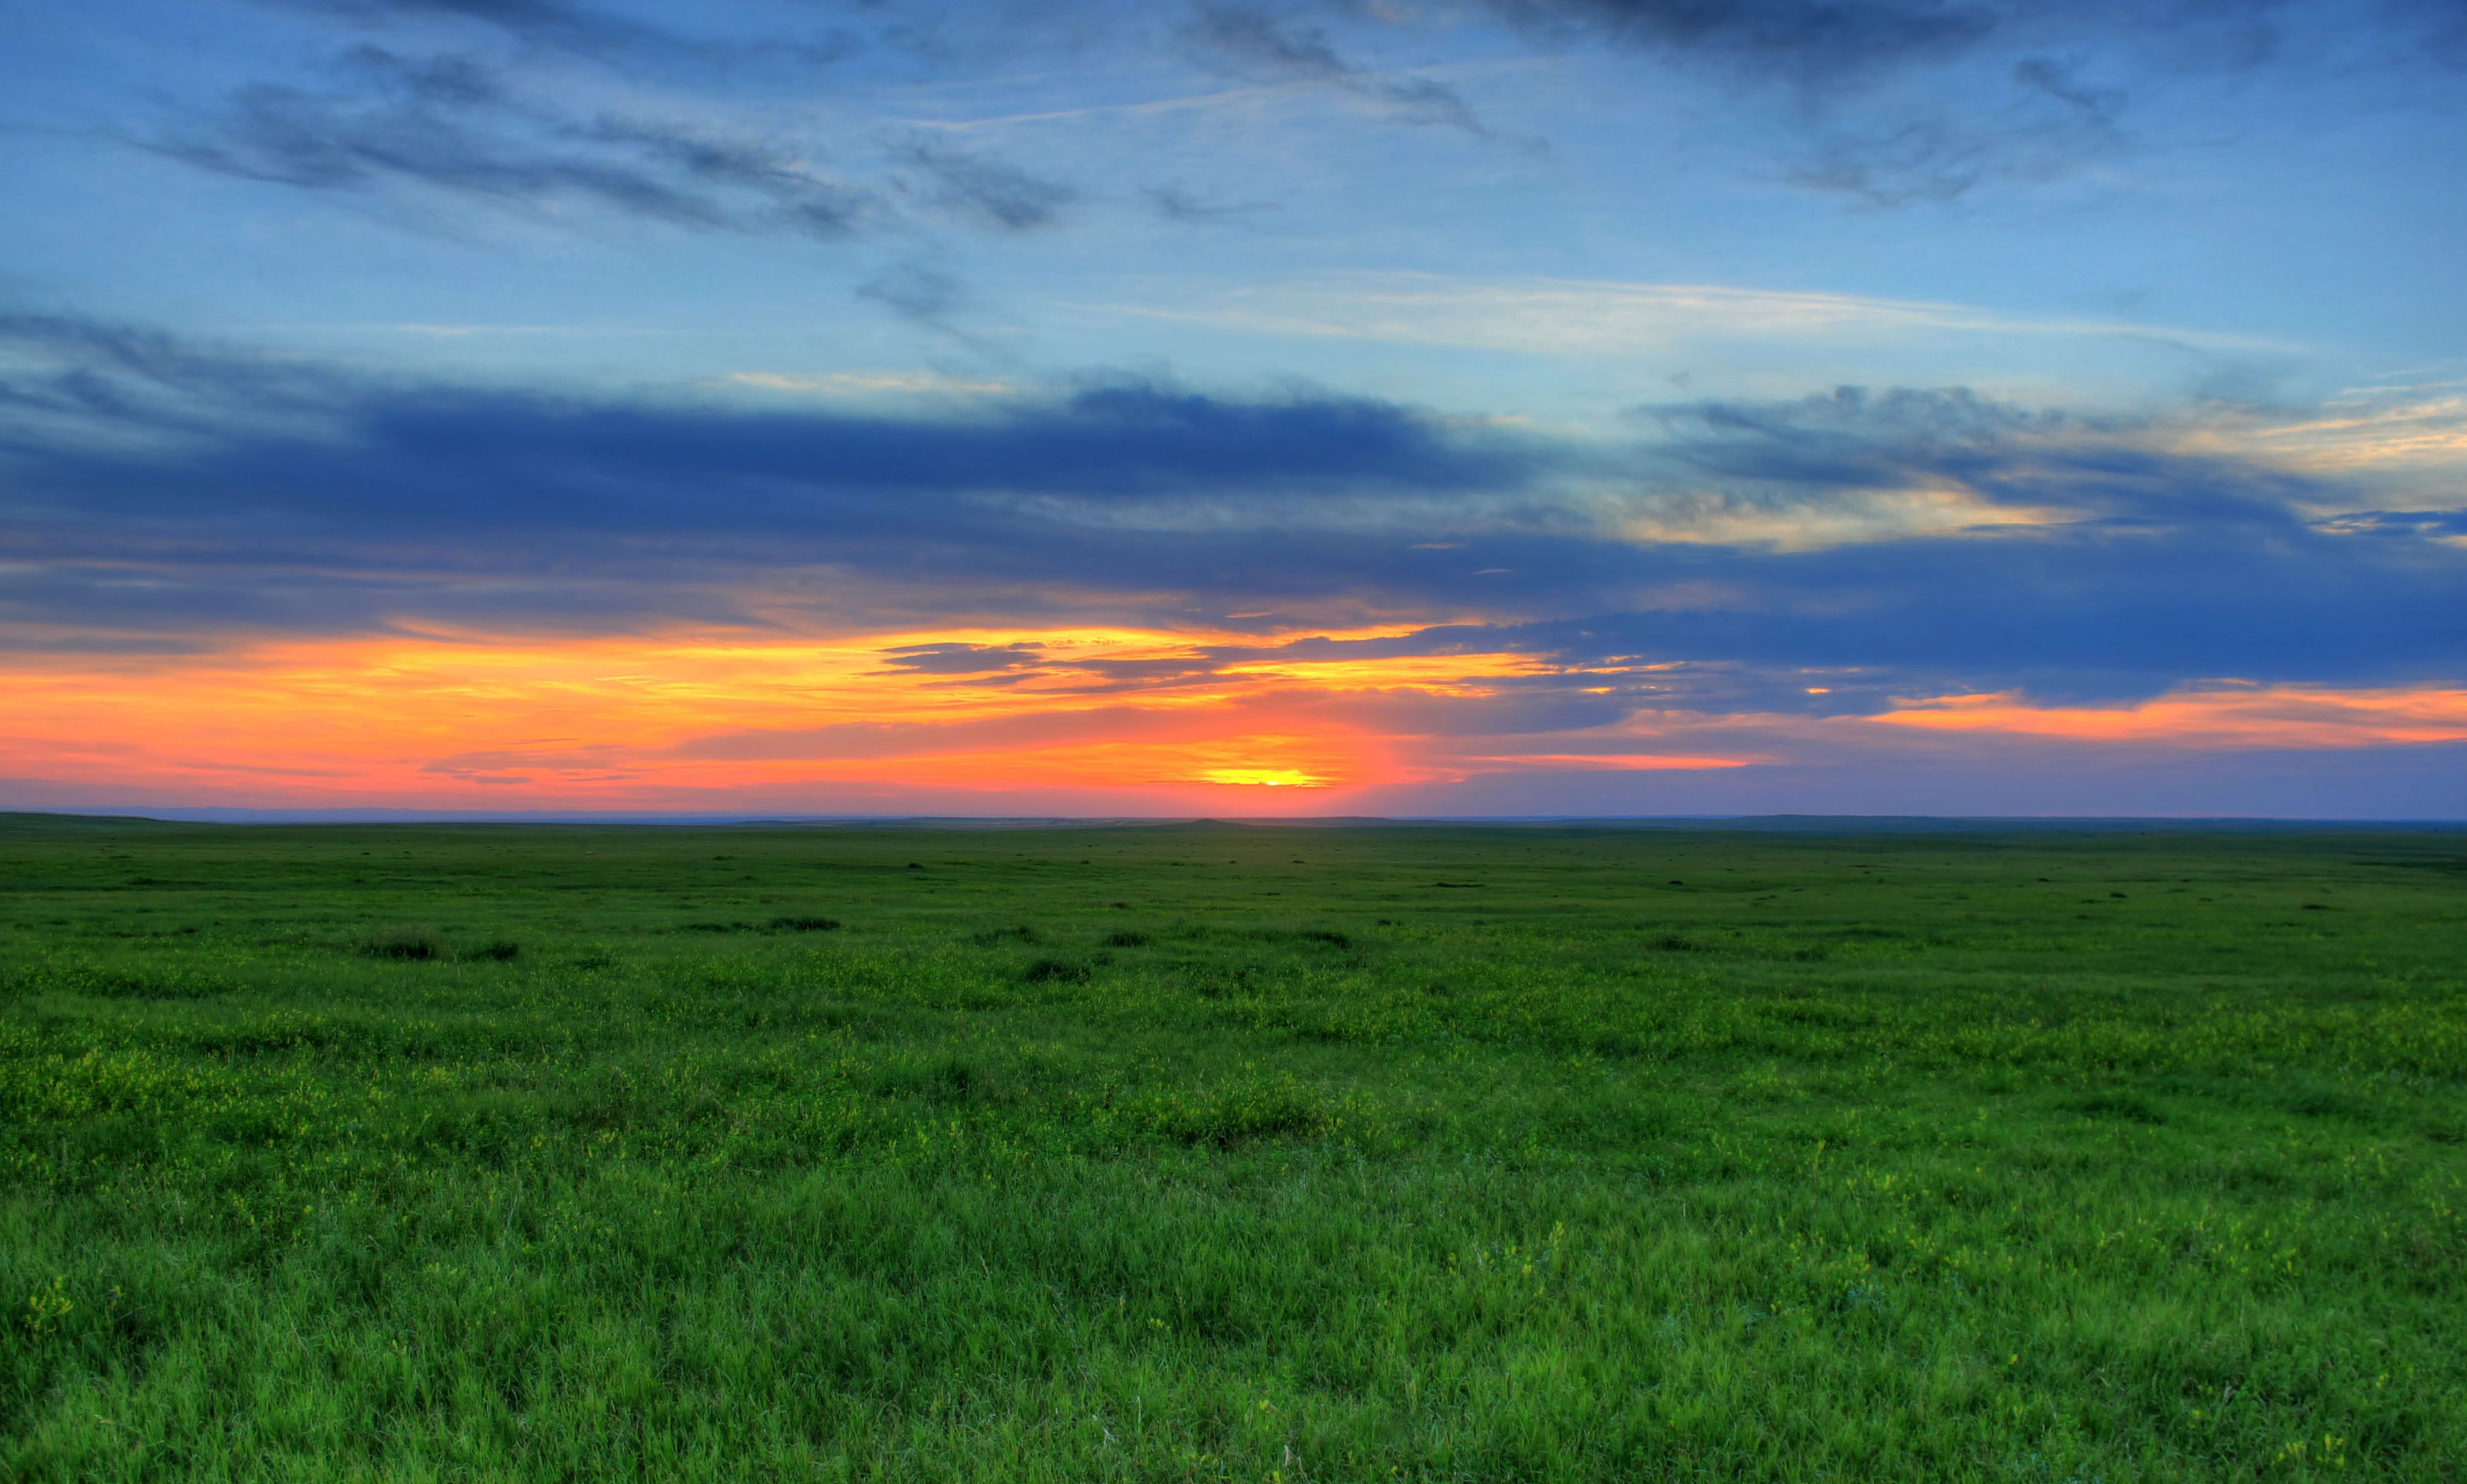 Brighter sunset at Badlands National Park, South Dakota image - Free